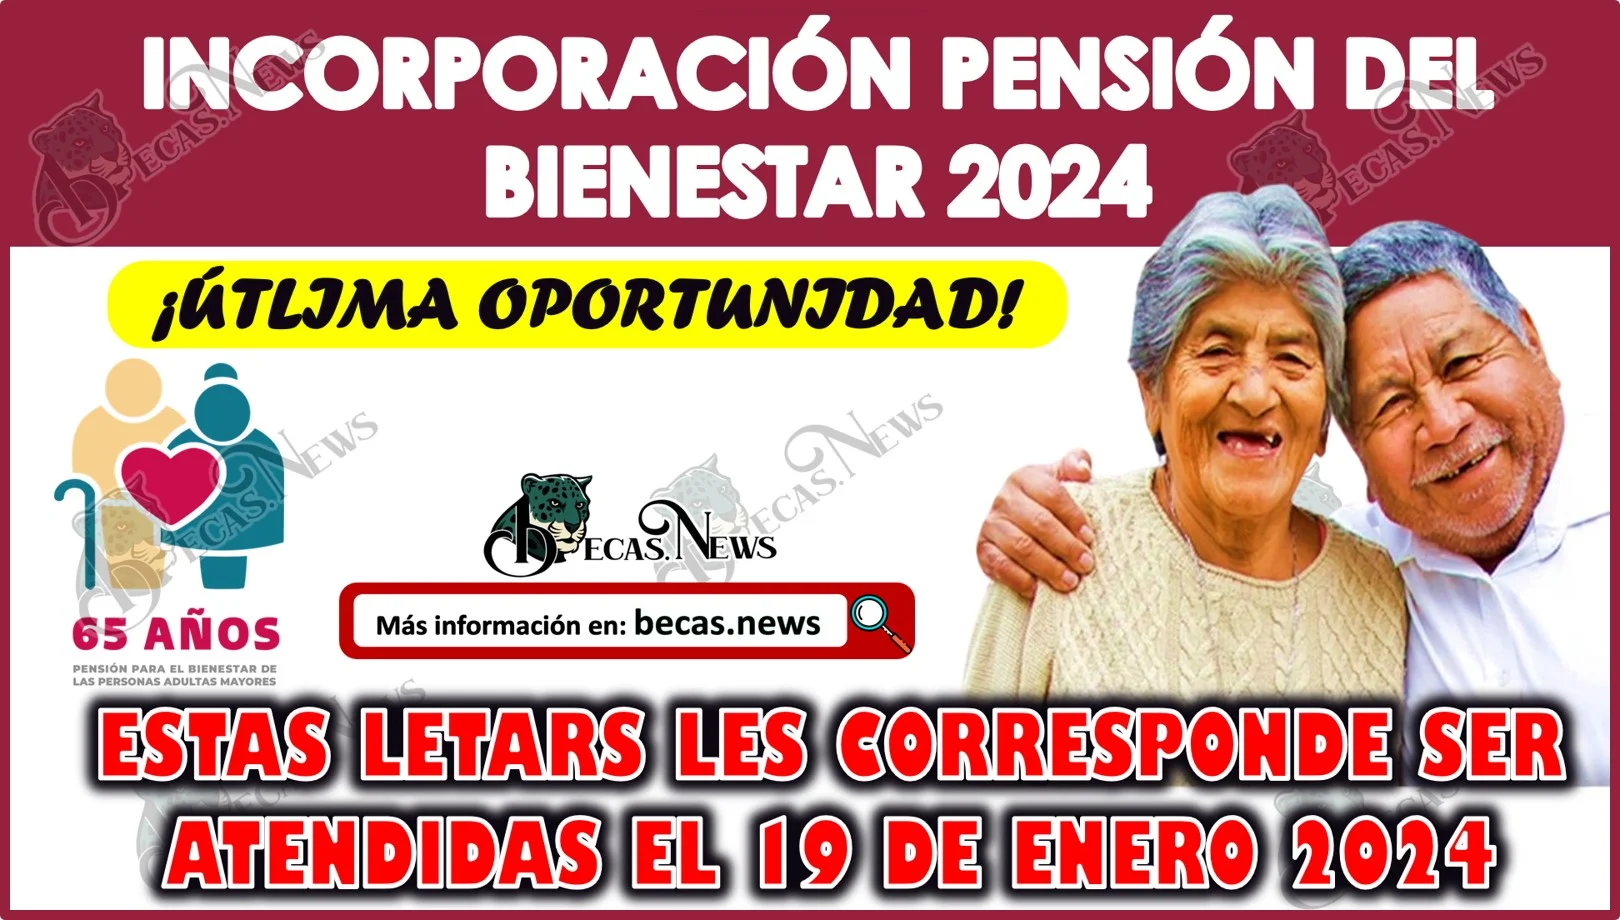 Pensión del Bienestar 2024: A estos abuelitos les toca acudir a registrarse este viernes 19 de enero 2024